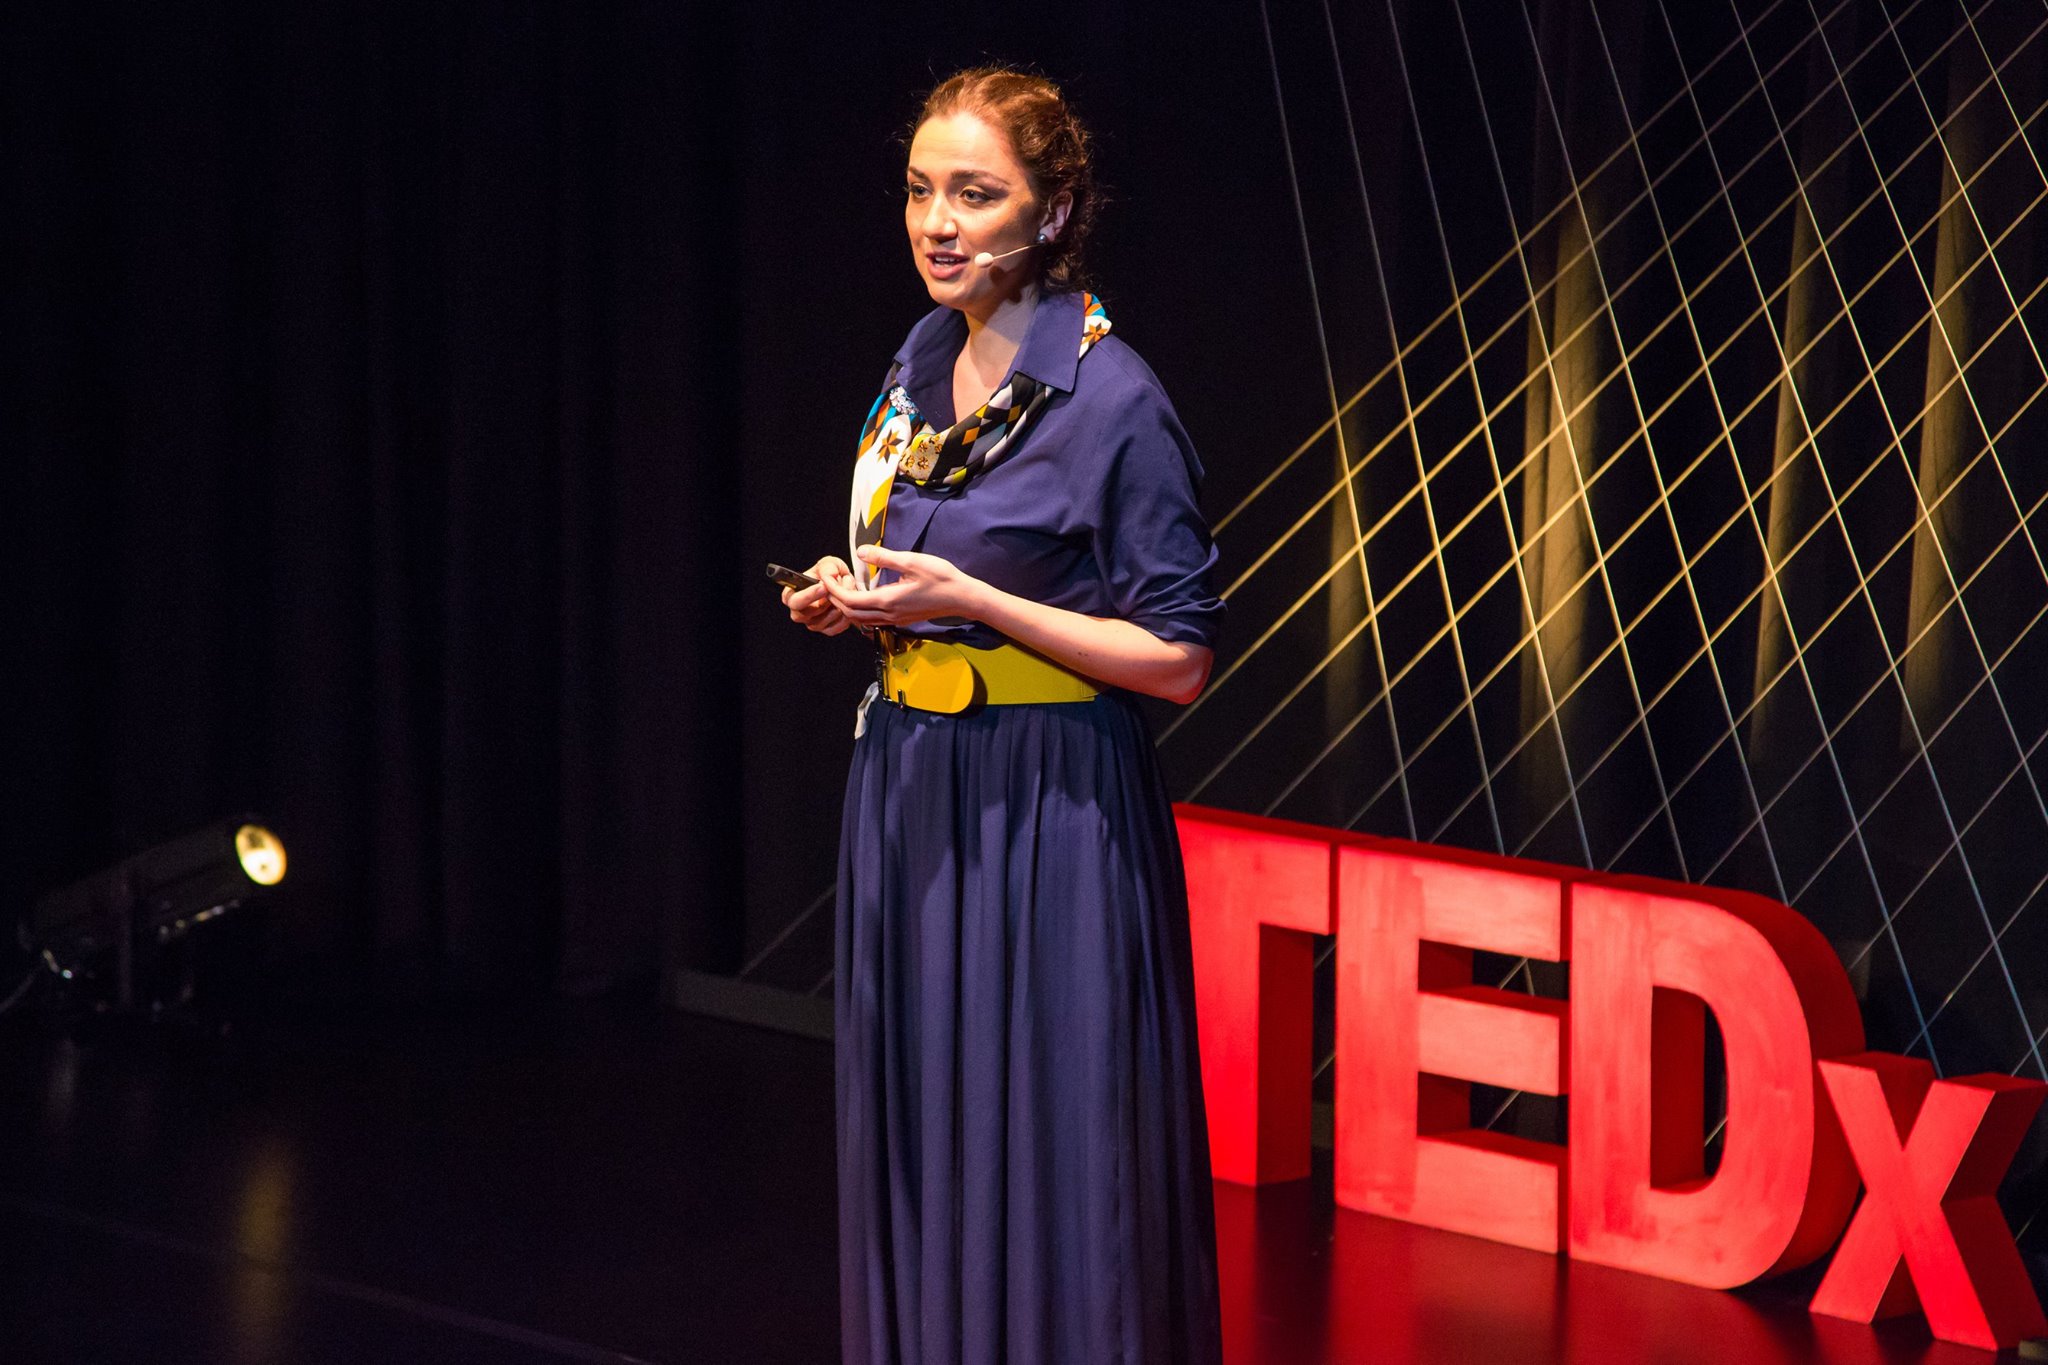 Anastasia at TEDx in London